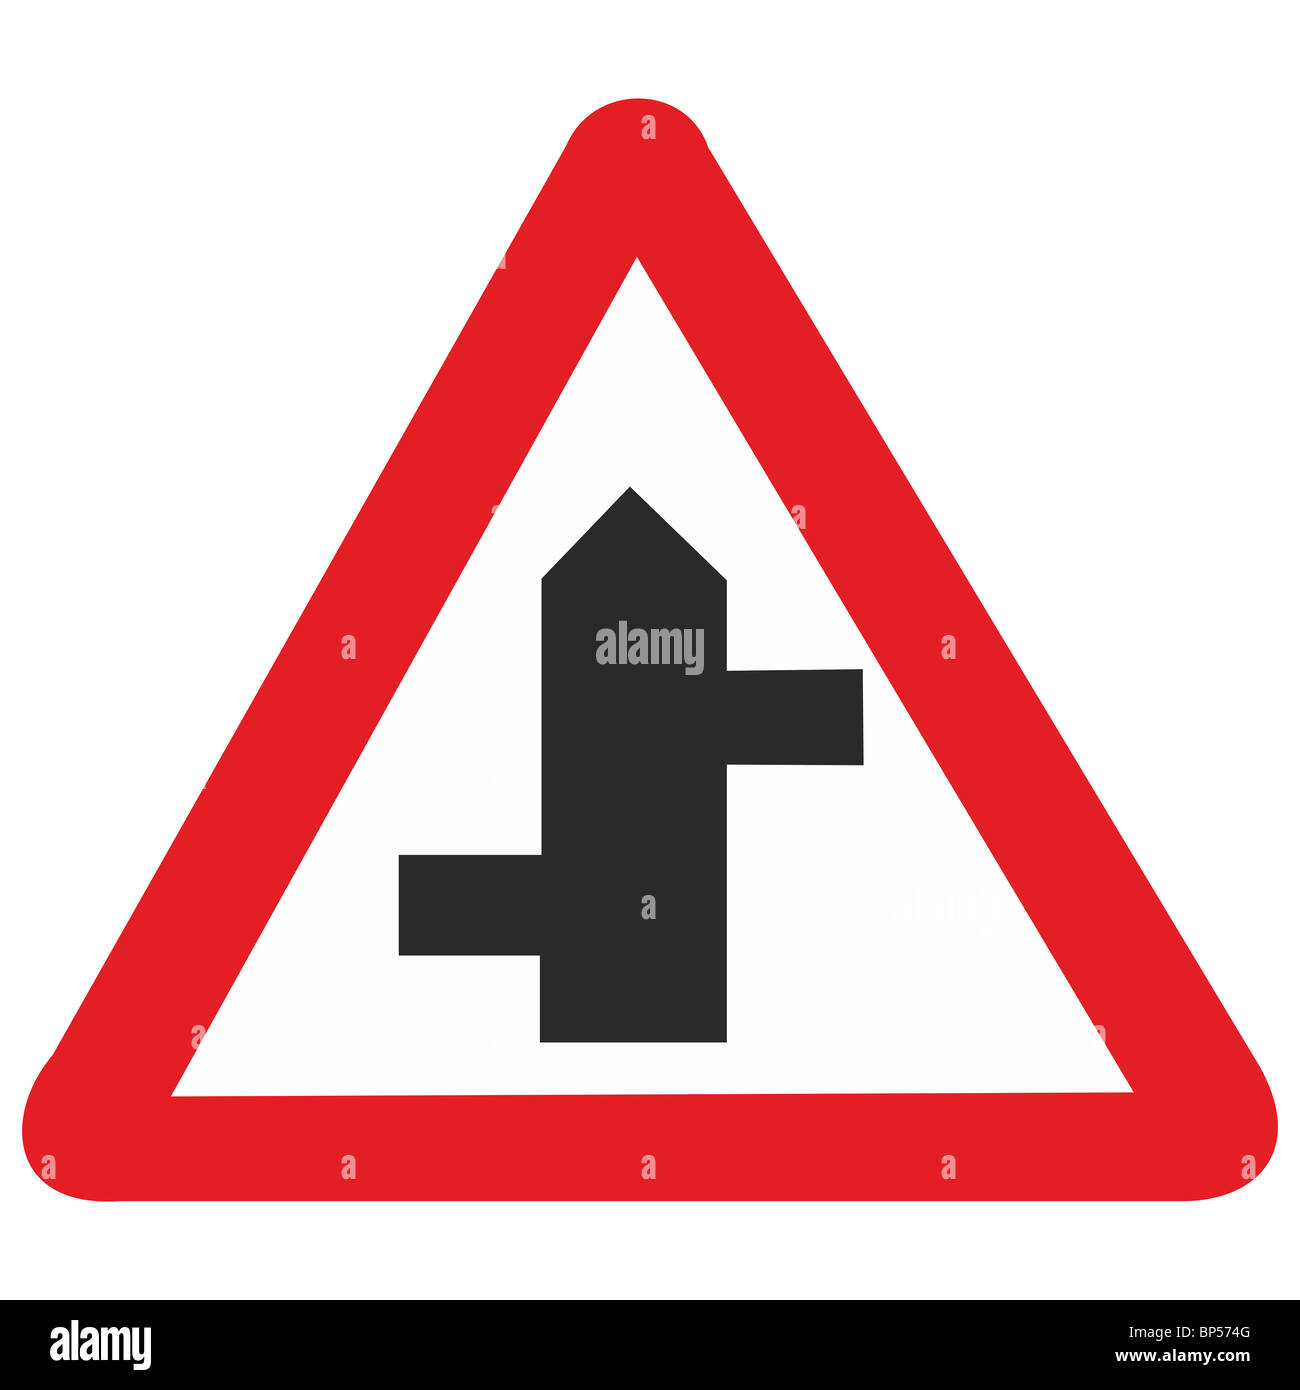 Regno Unito cartello stradale per circolazione su strada lato giunzione sfalsati avanti giunzioni per circolazione su strada lato strada strade strade Foto Stock